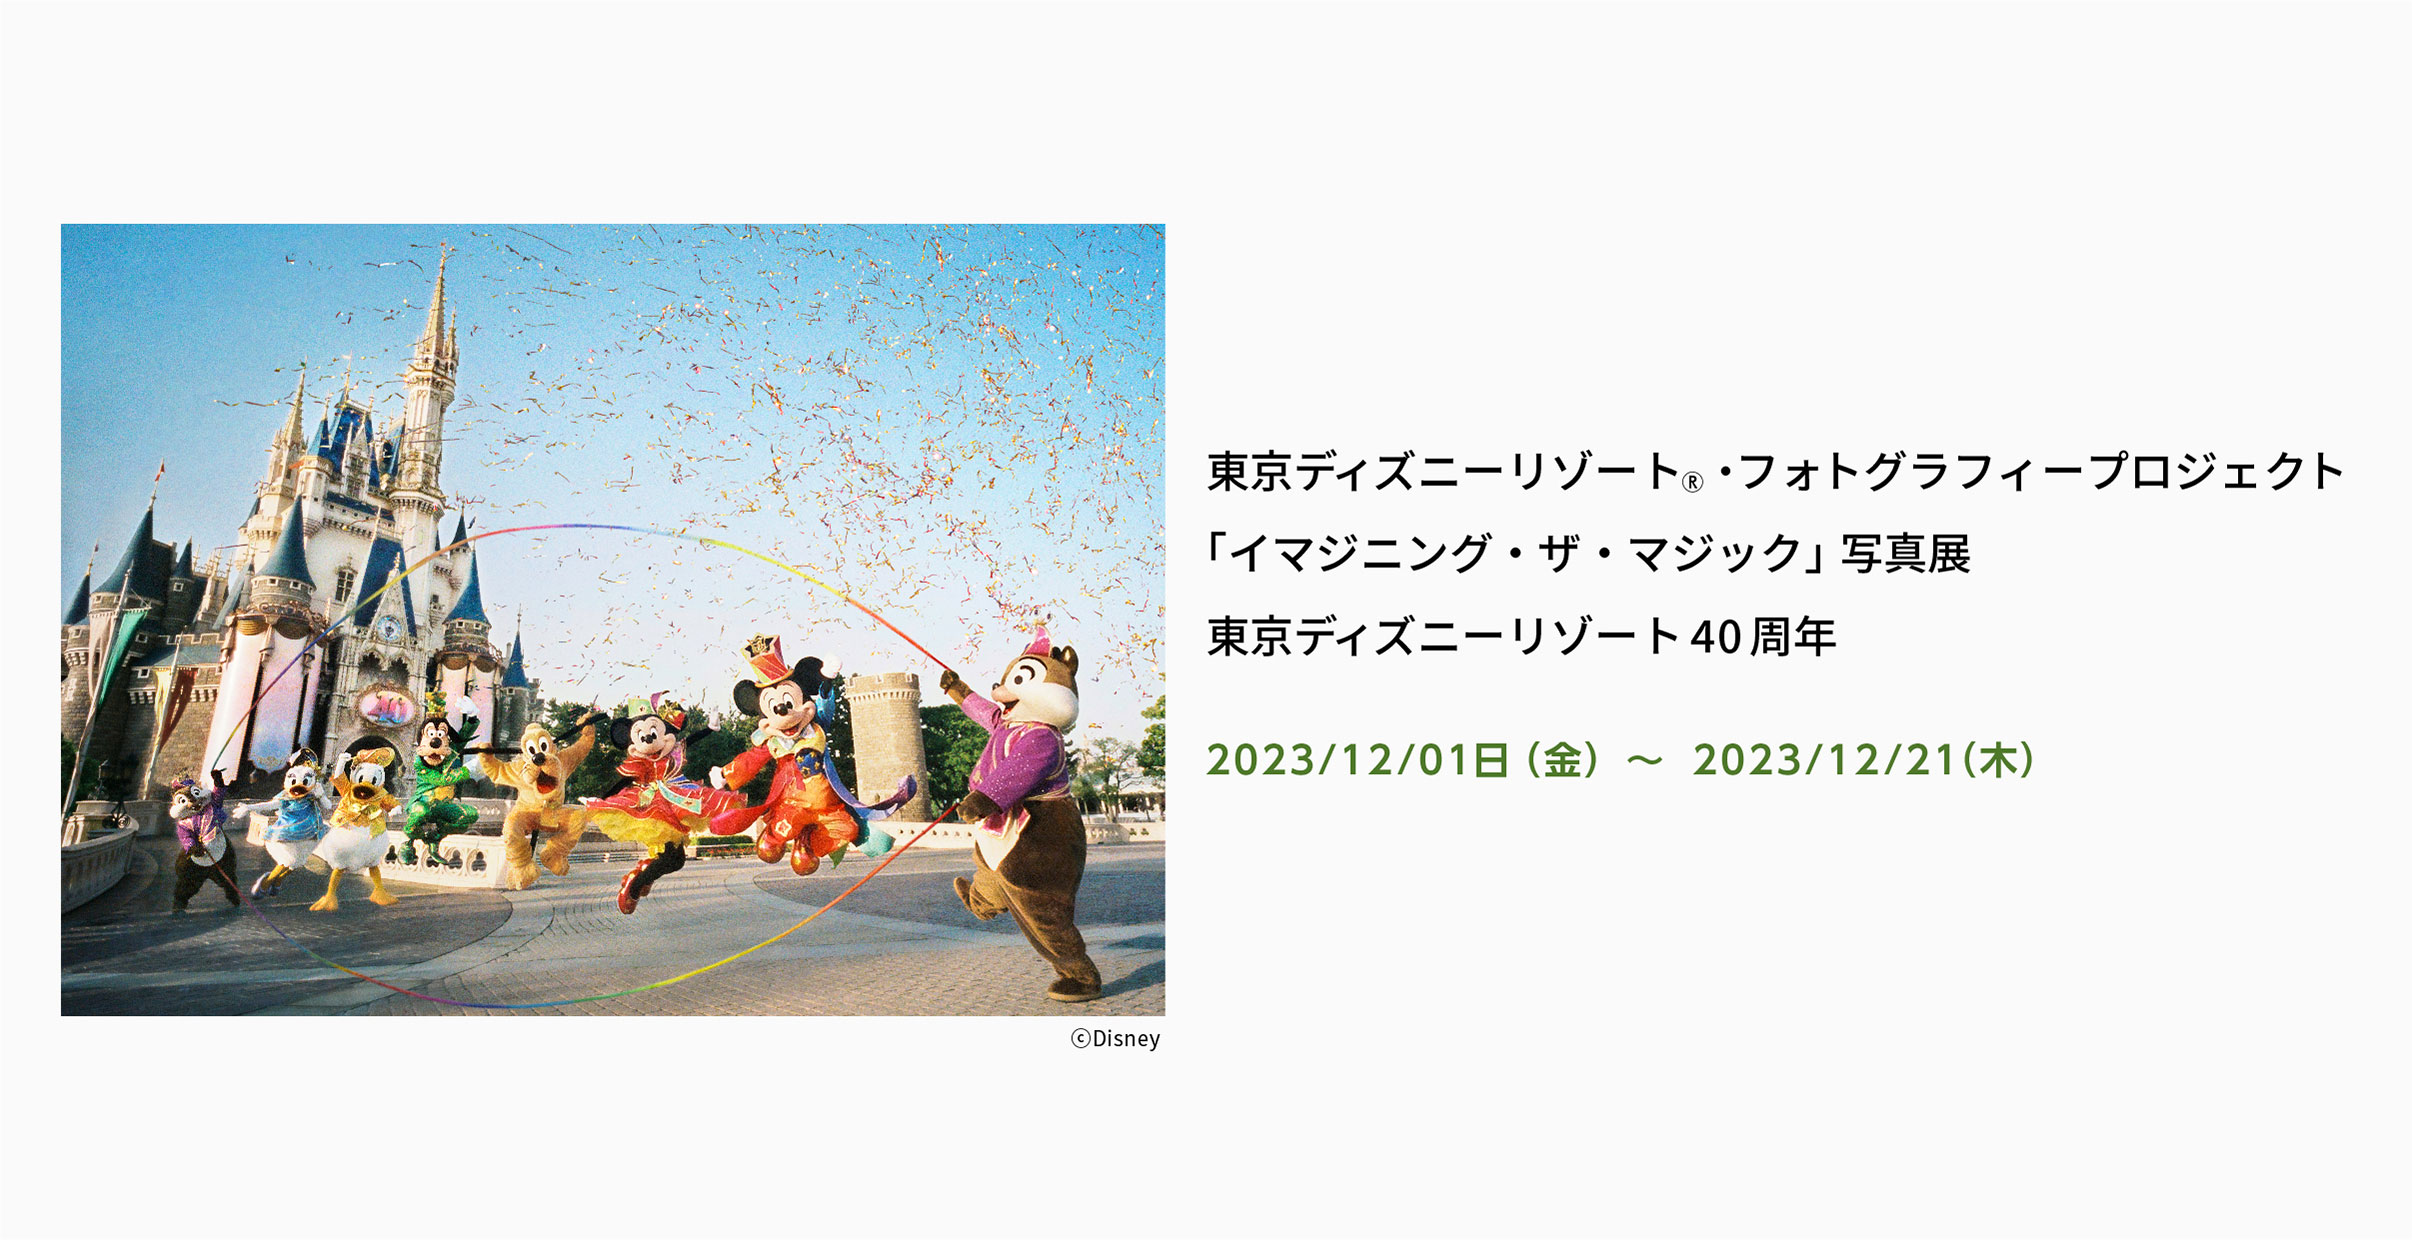 [image]東京ディズニーリゾート®・フォトグラフィープロジェクト「イマジニング・ザ・マジック」写真展　東京ディズニーリゾート40周年